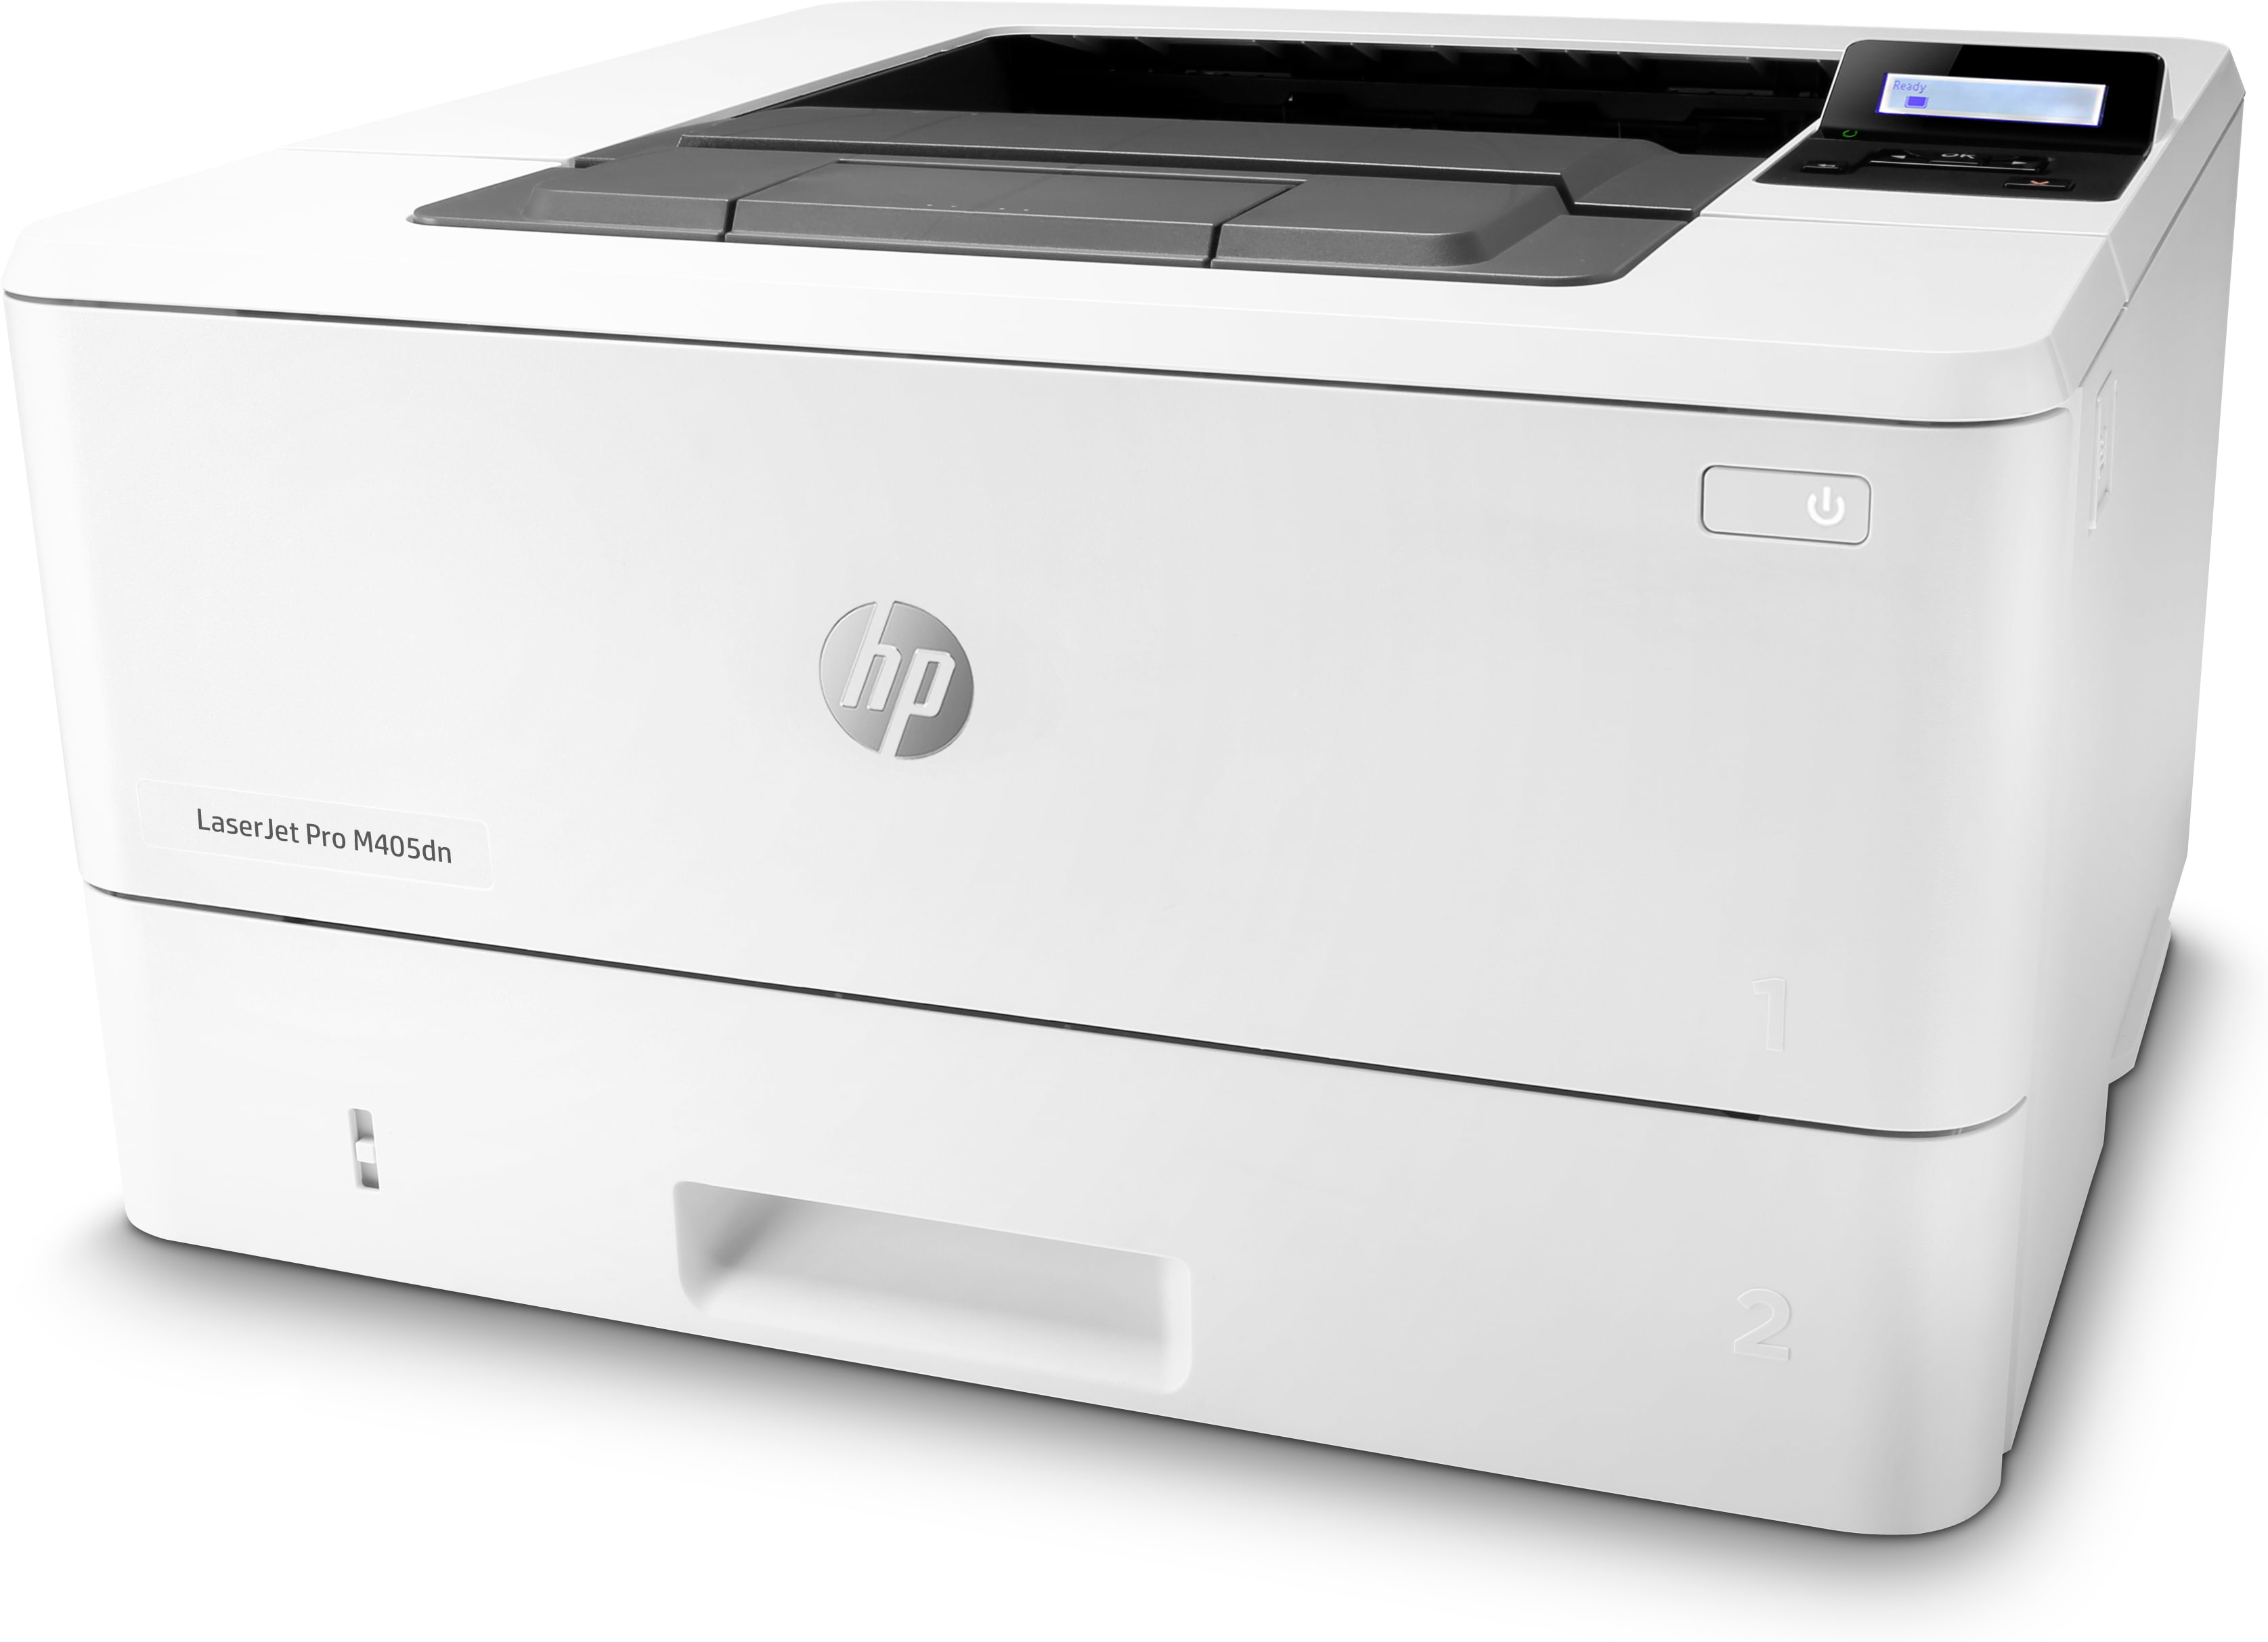 HP LaserJet Pro M405dn